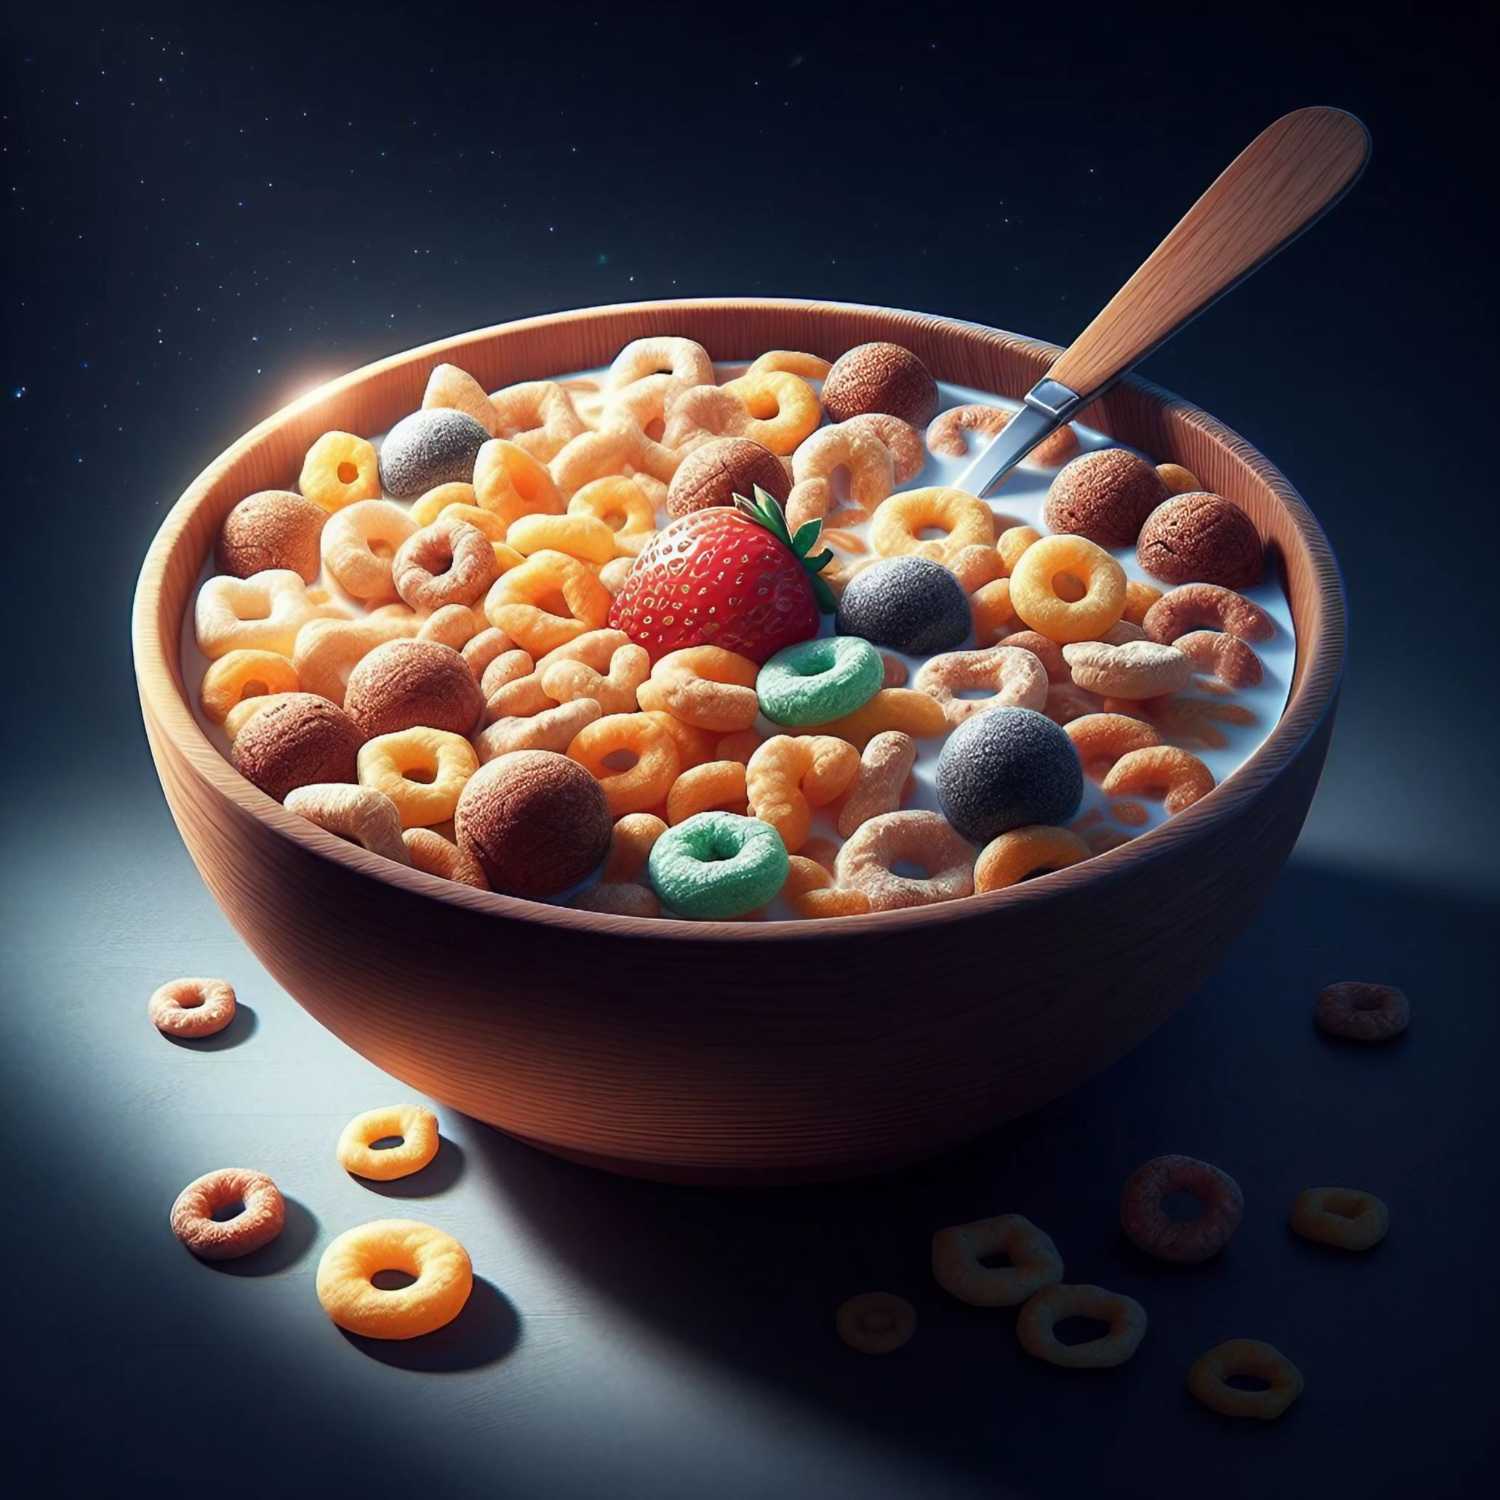 51: Breakfast cereal